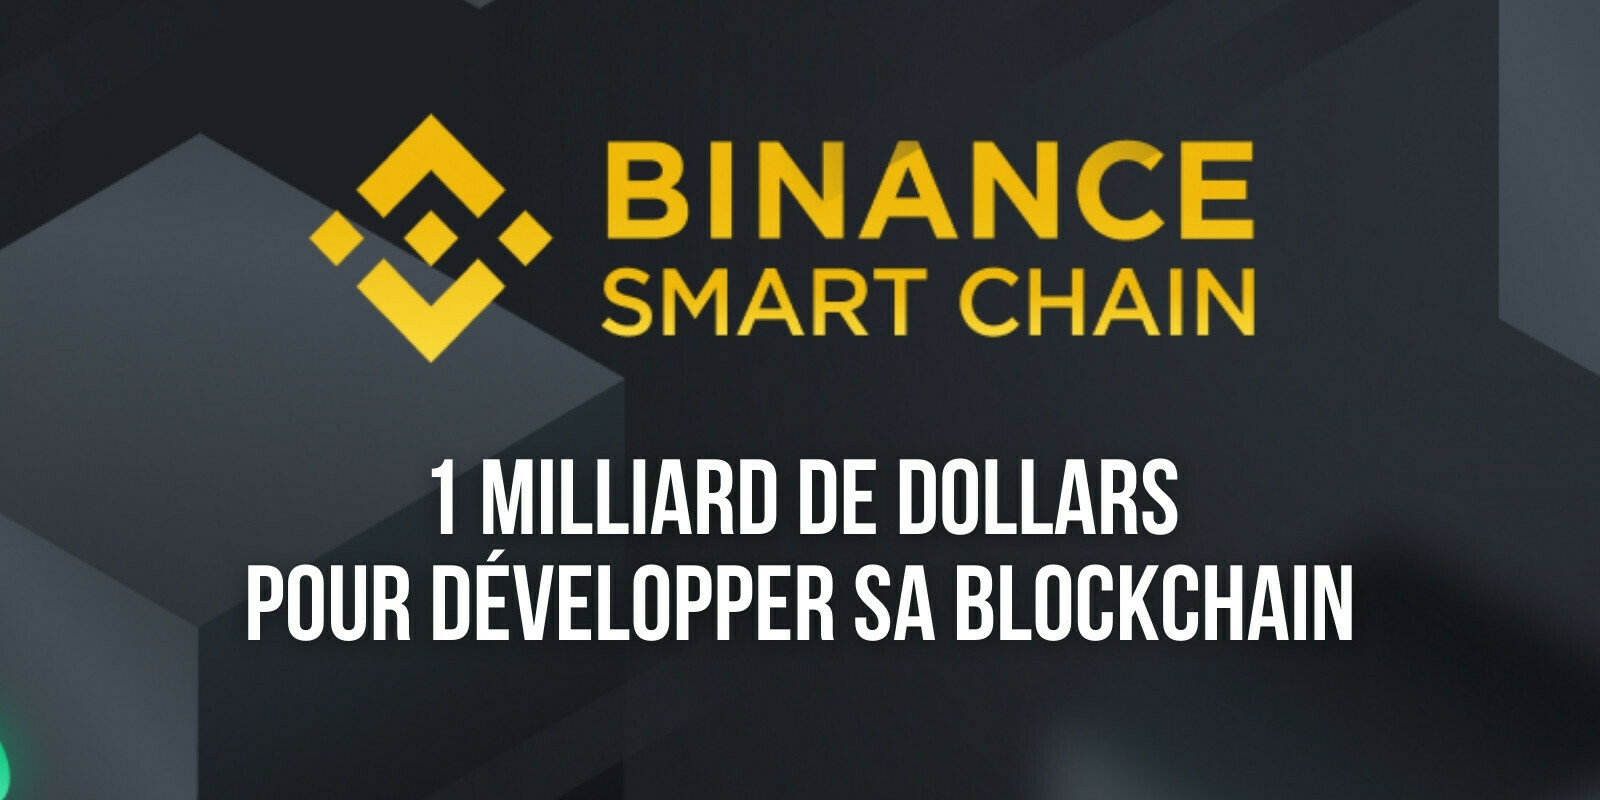 Binance alloue 1 milliard de dollars au développement de sa blockchain, la Binance Smart Chain (BSC)